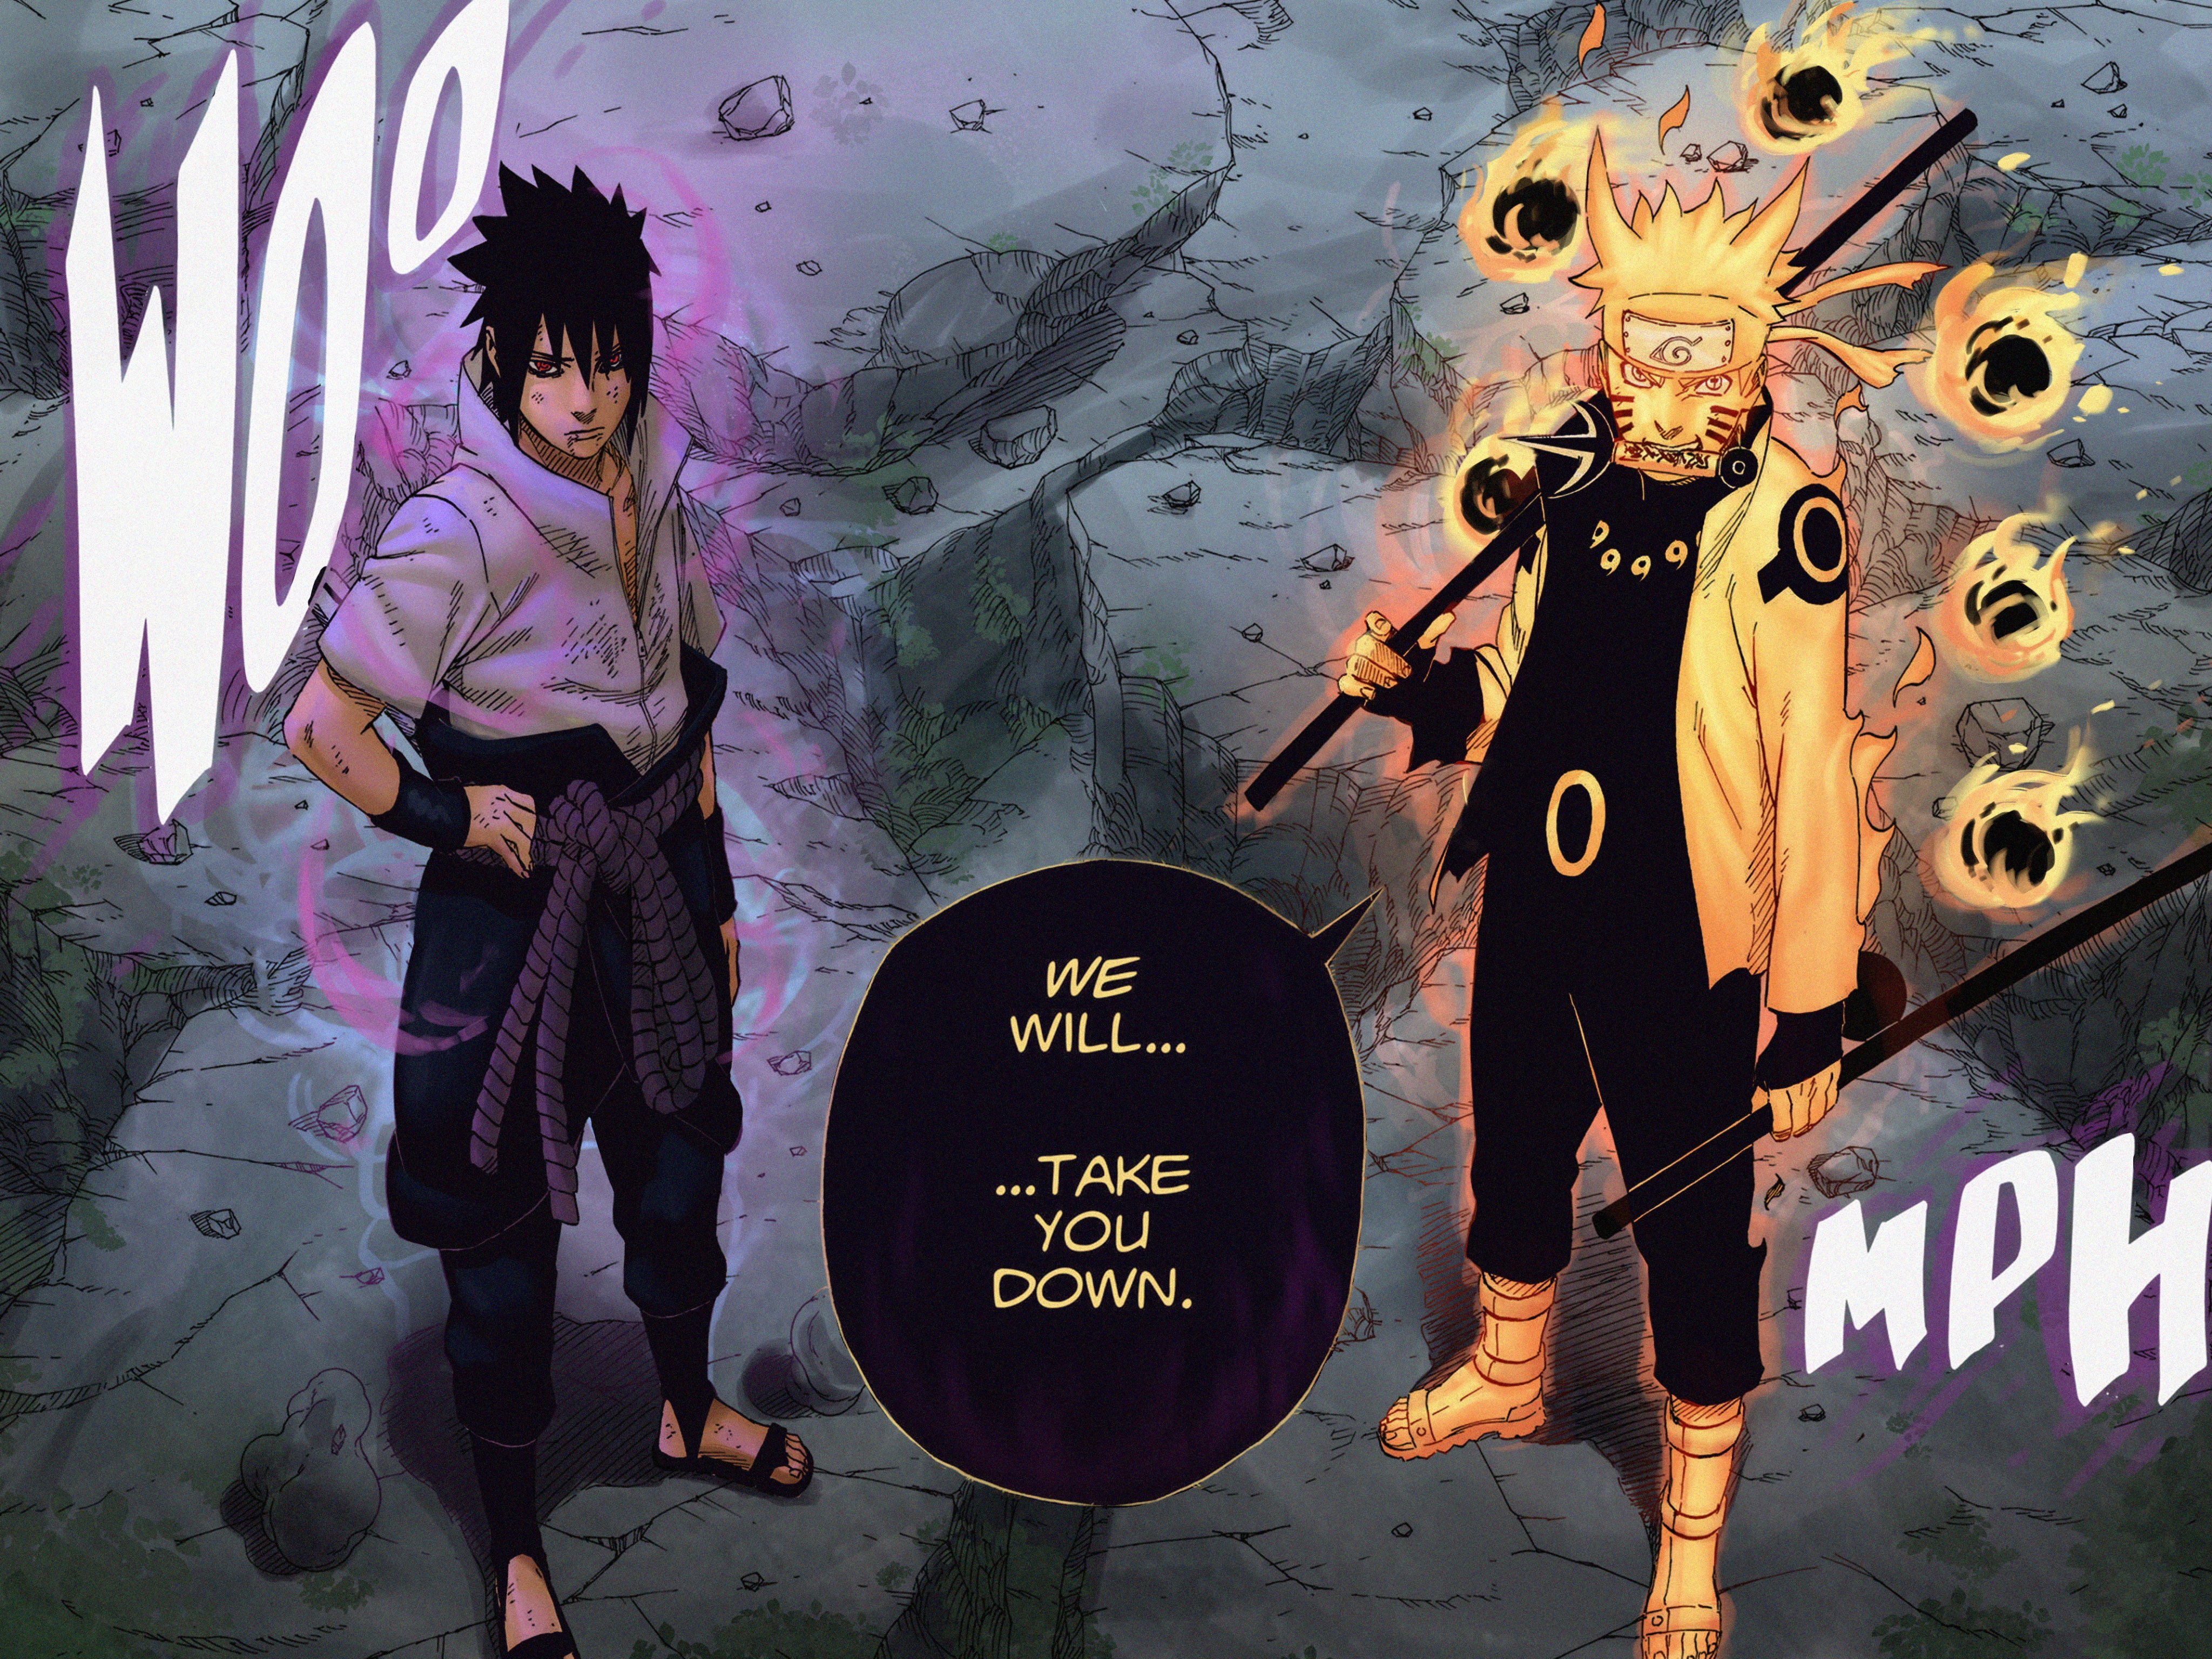 Naruto and Sasuke vs Avatar Crew - Battles - Comic Vine